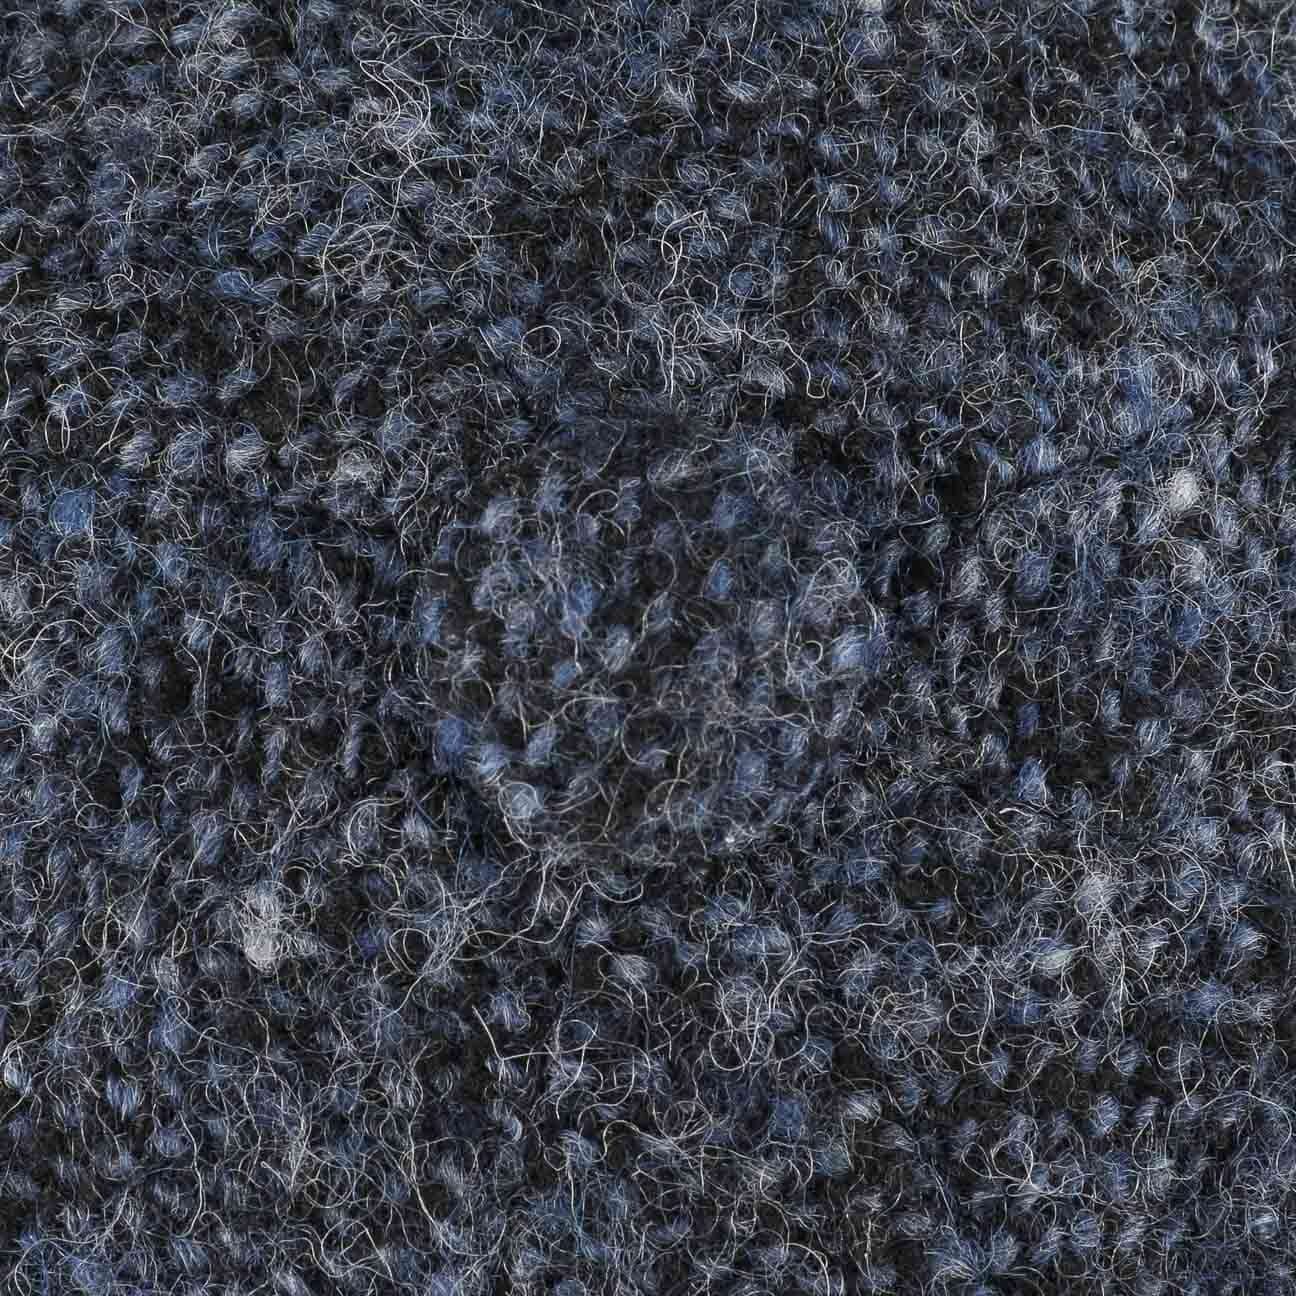 Flat Schirm mit (1-St) Cap Stetson Wollcap dunkelblau